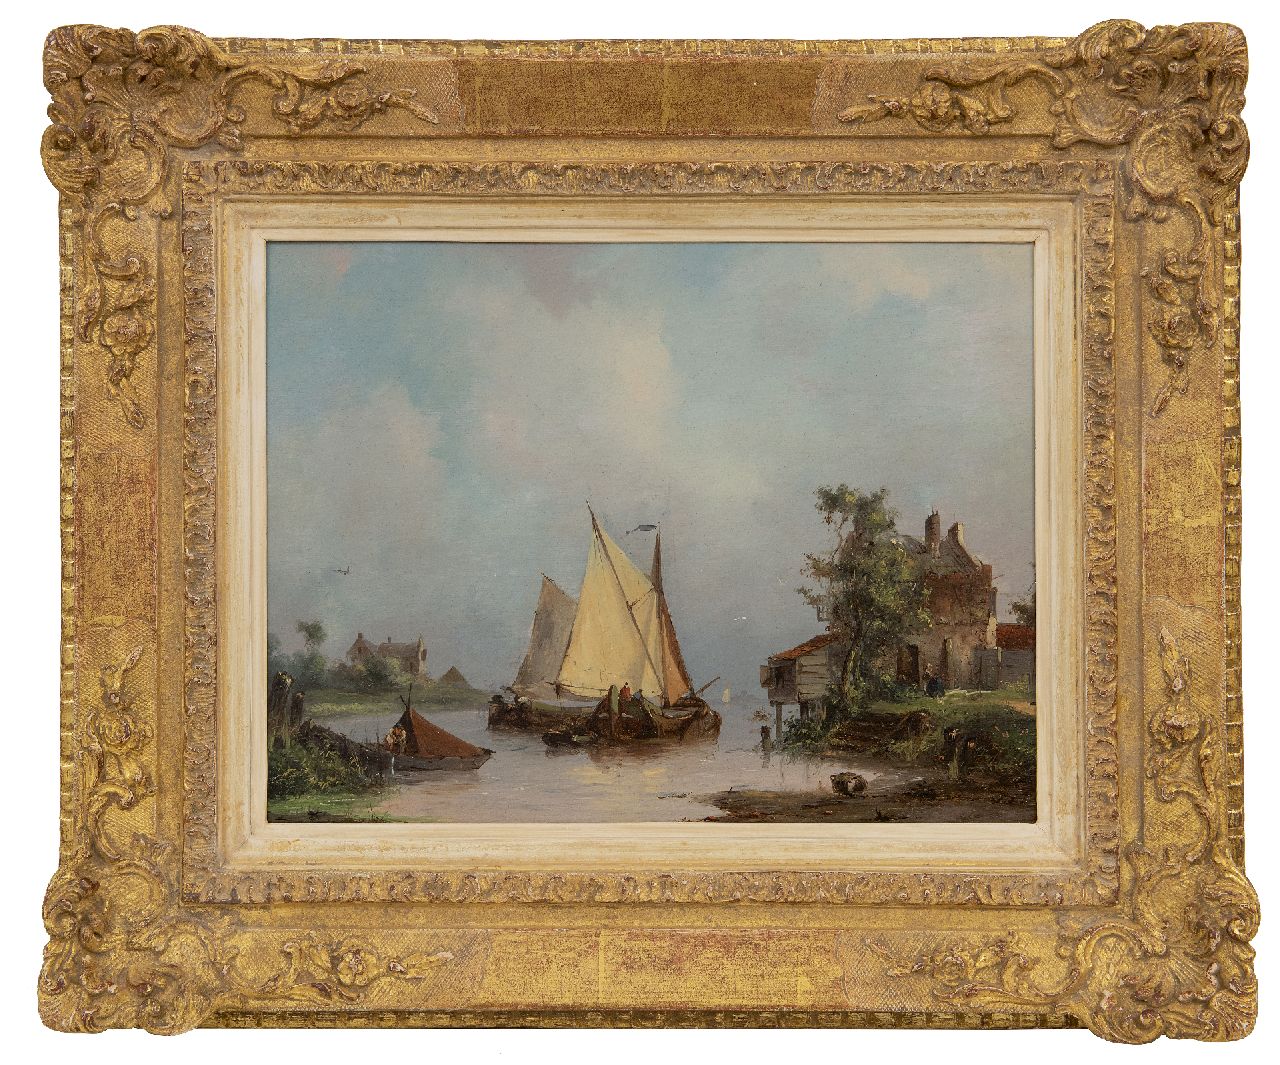 Hilleveld A.D.  | Adrianus David Hilleveld | Schilderijen te koop aangeboden | Zeilschepen op een rivier, olieverf op paneel 24,8 x 32,3 cm